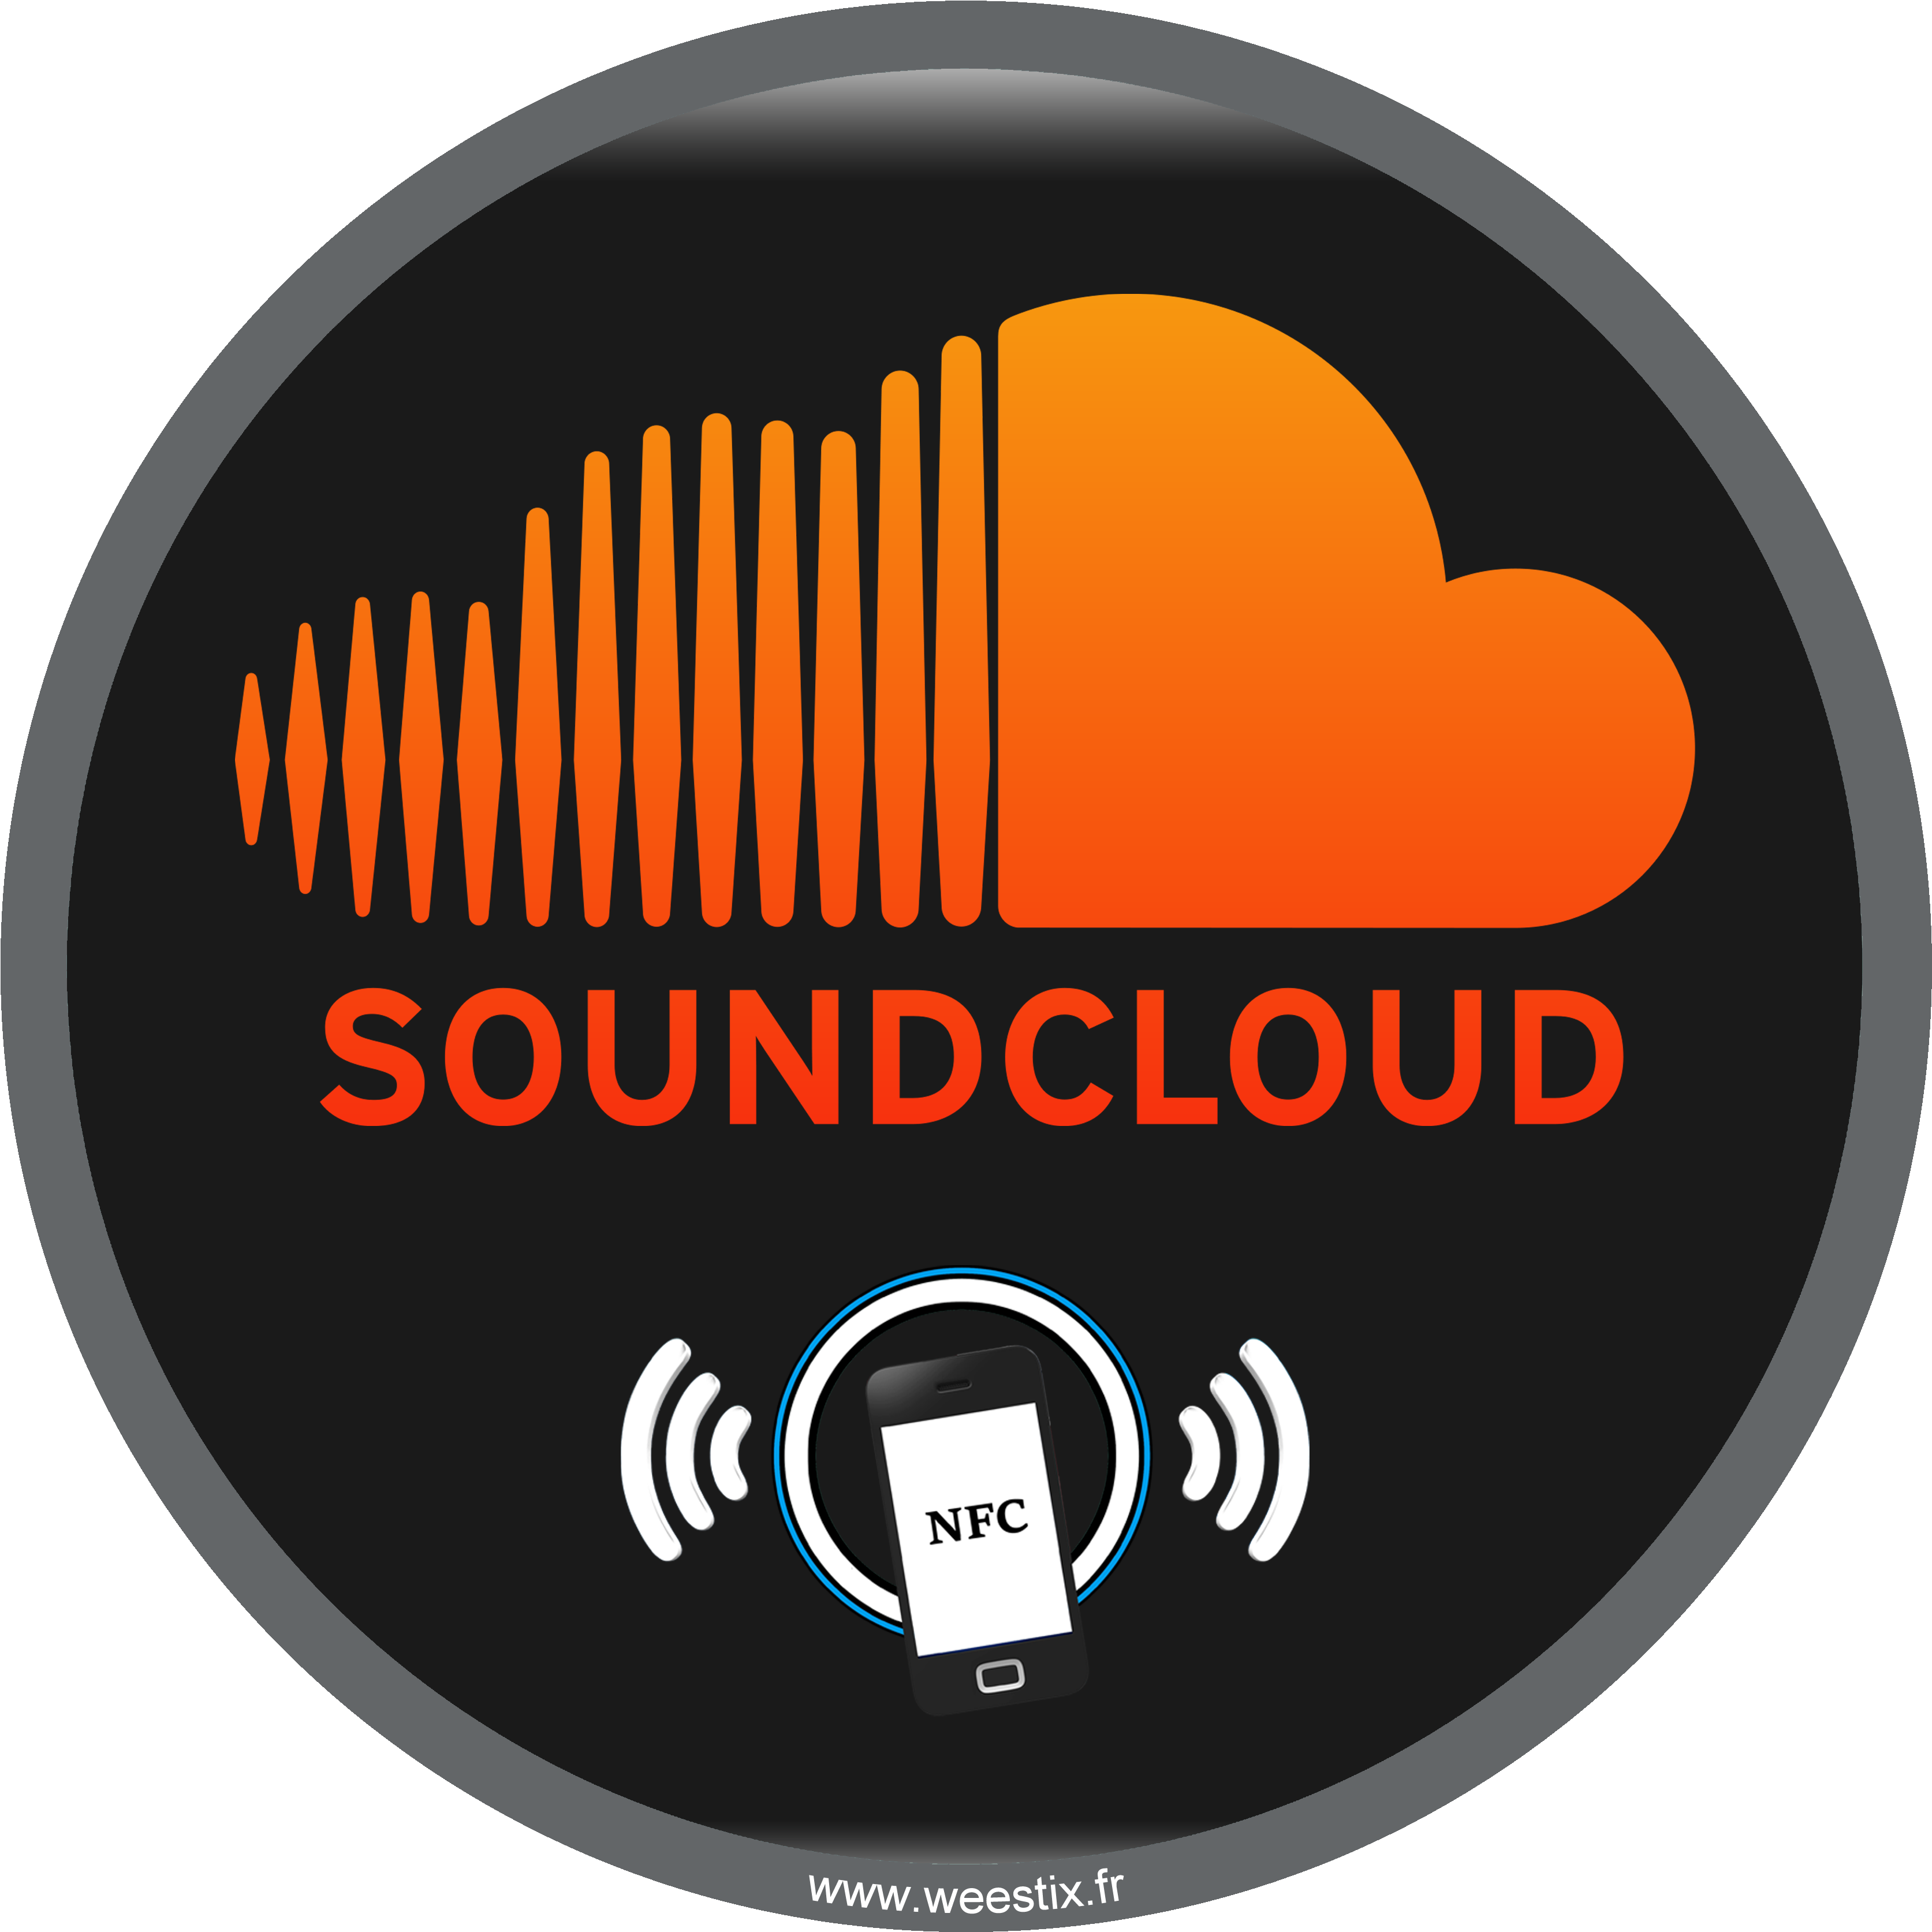 2 Attachments - Follow Me On Soundcloud (3360x3360), Png Download